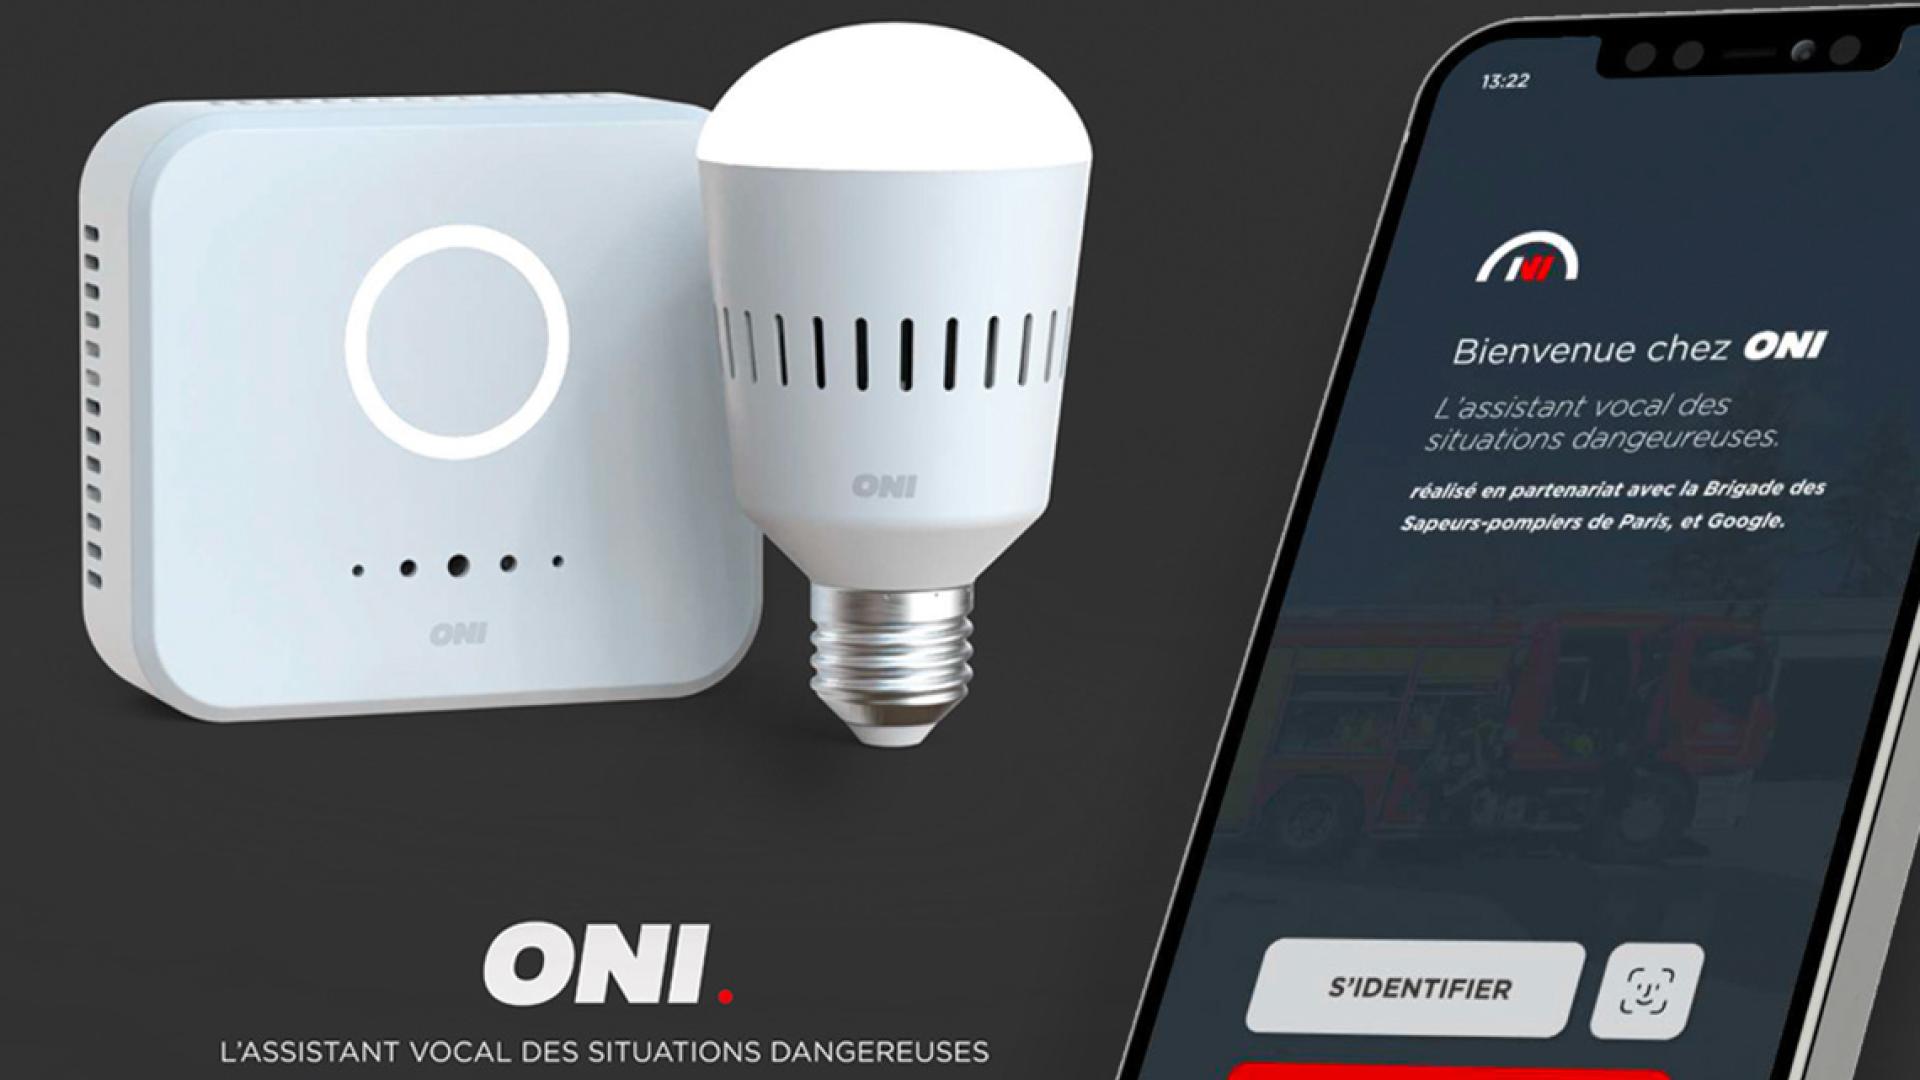 Projet ONI en cycle master digital design pour améliorer la communication entre les acteurs en amont d’un incendie